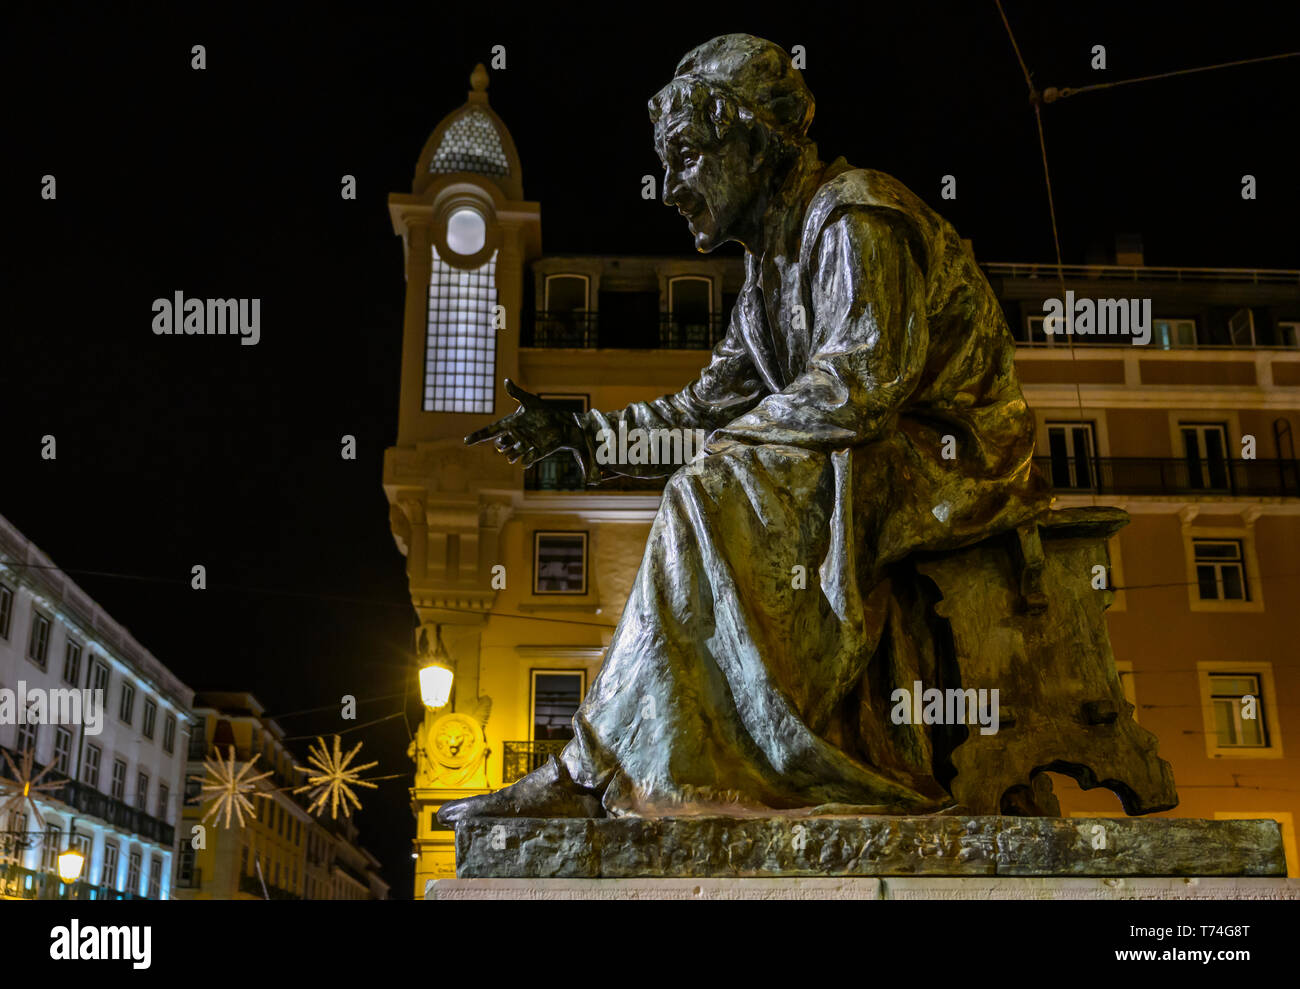 Statua di un uomo seduto in una piazza cittadina di notte; Lisbona, regione Lisboa, Portogallo Foto Stock